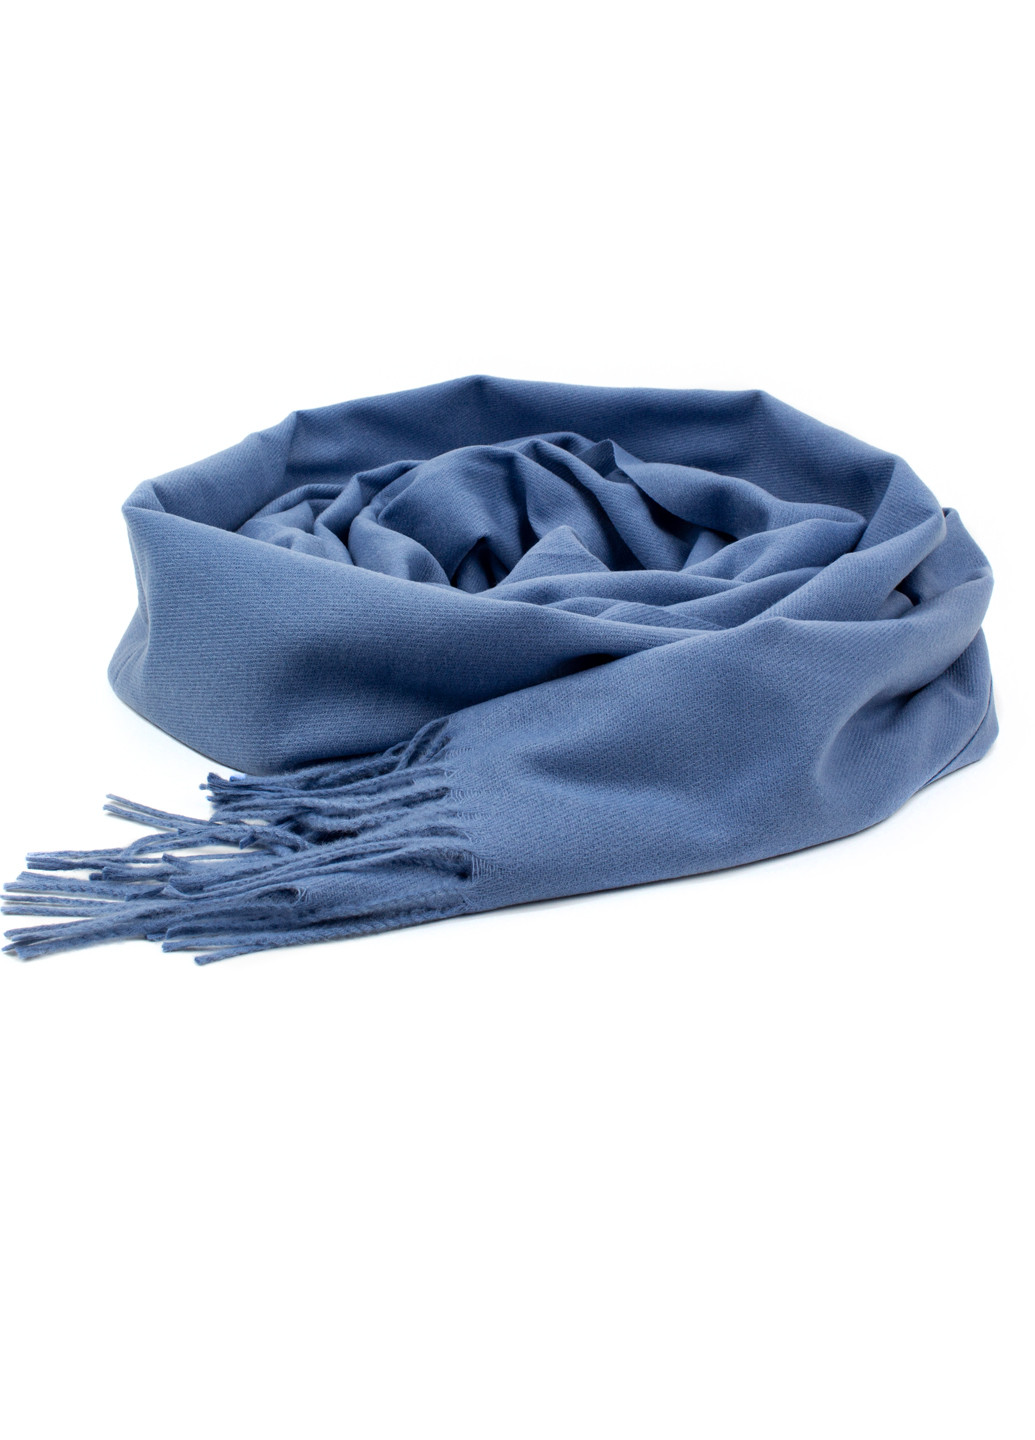 Жіночий однотонний шарф з бахромою, темно-блакитний Corze gs-1012 (269449229)